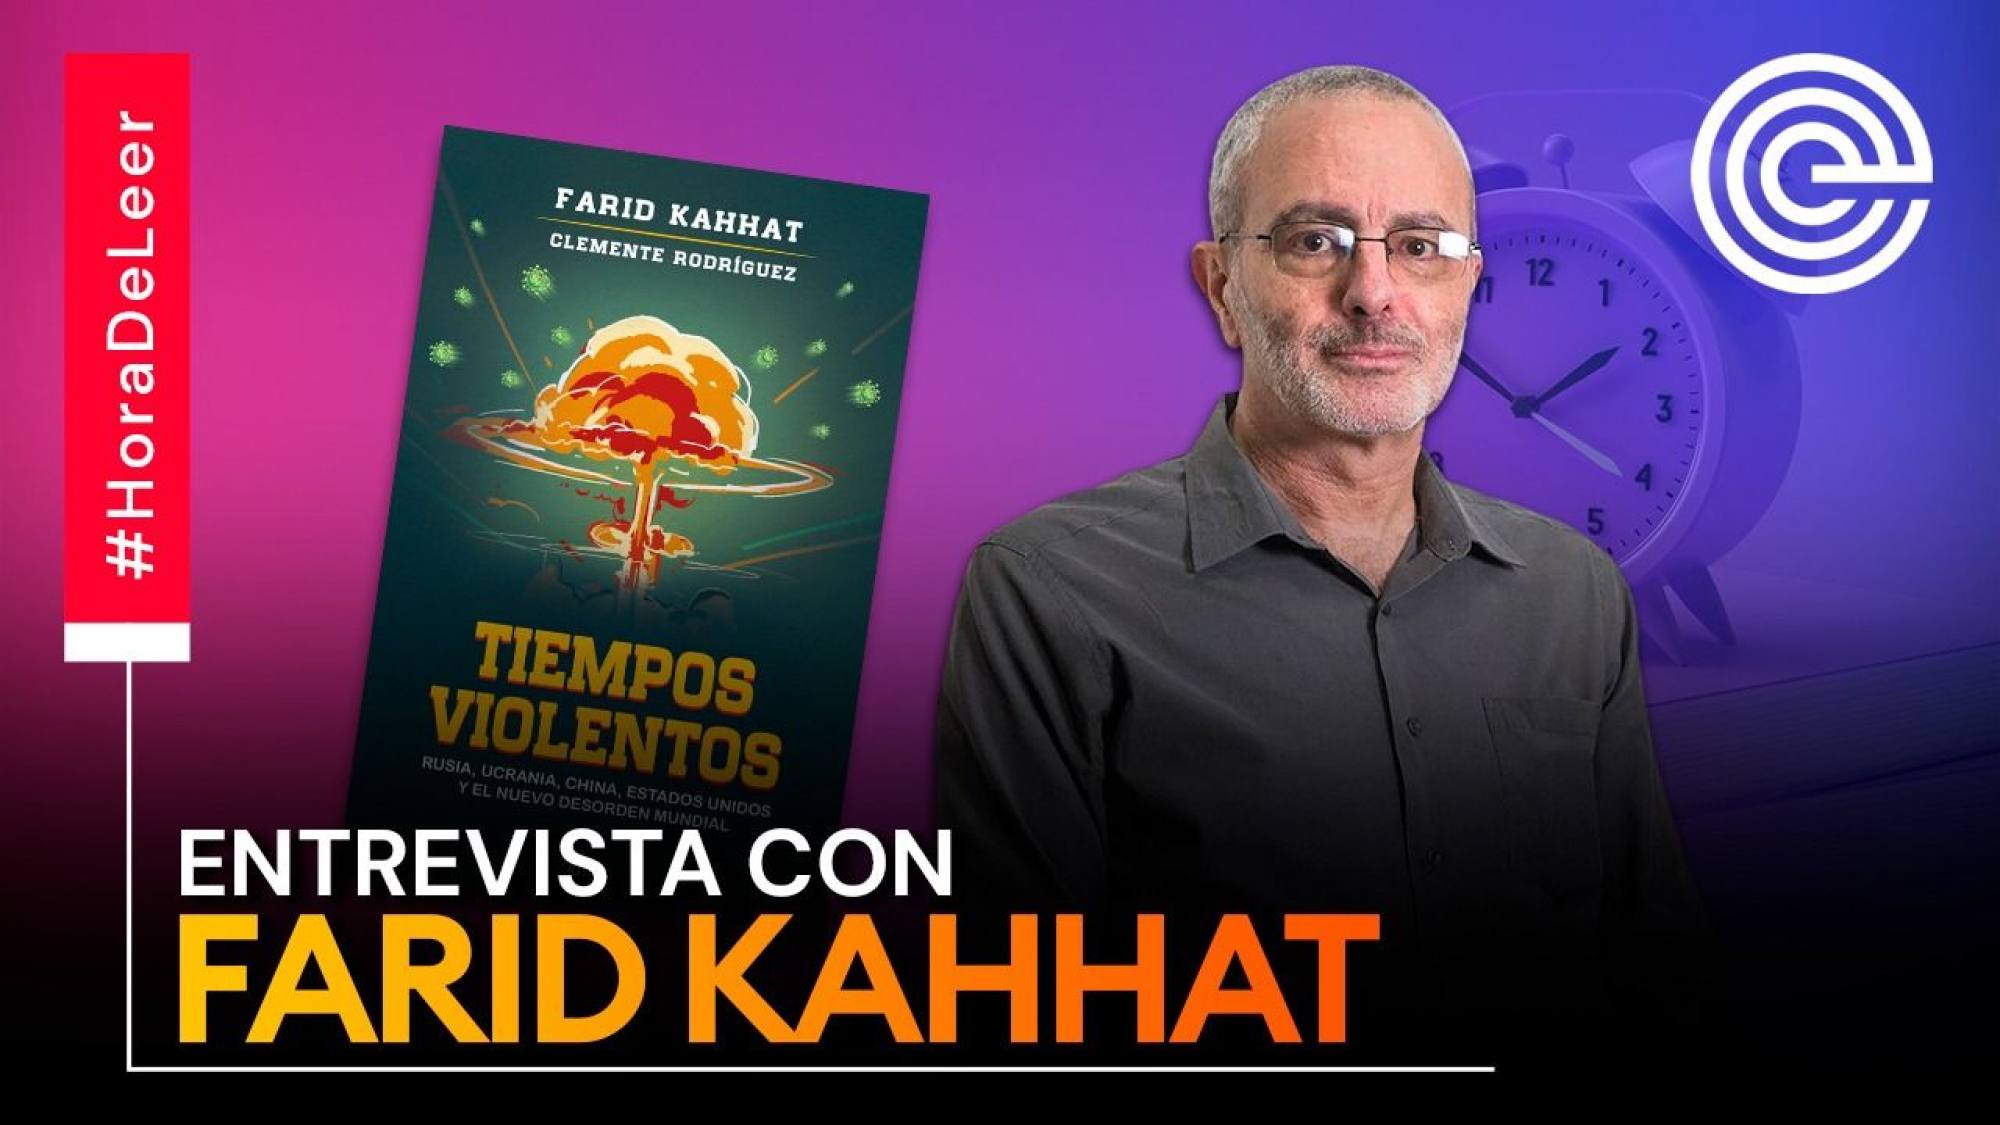 Farid Kahhat brinda detalles sobre su libro 'Tiempos violentos', Epicentro TV